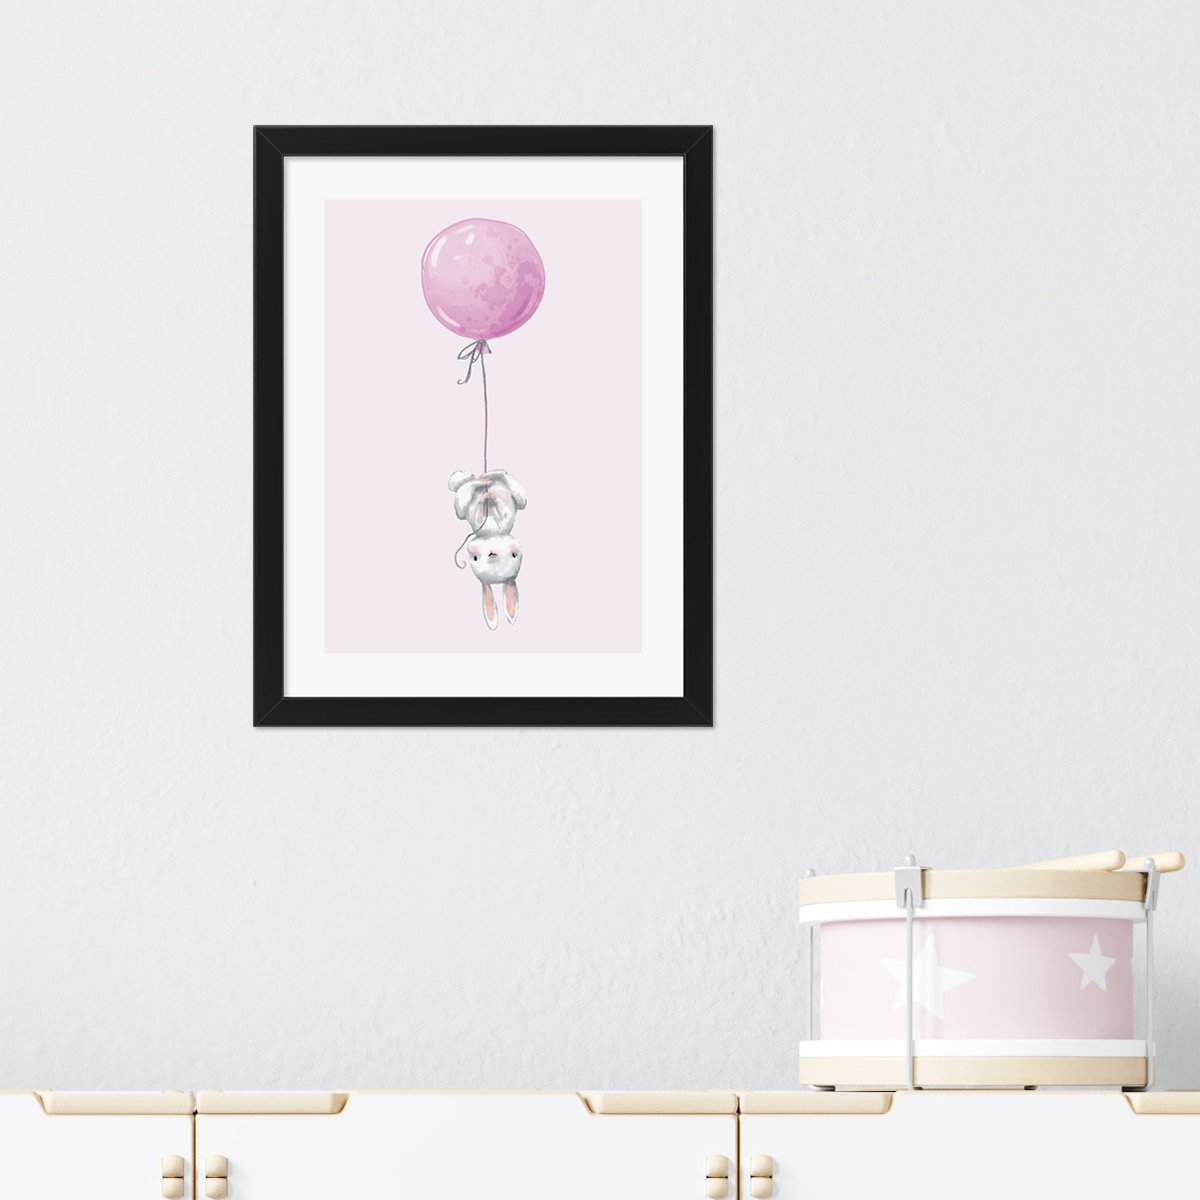 Plakaty dla dzieci królik i balon w pokoju dziecięcym - zestaw z czarna ramką#kolor_rozowy